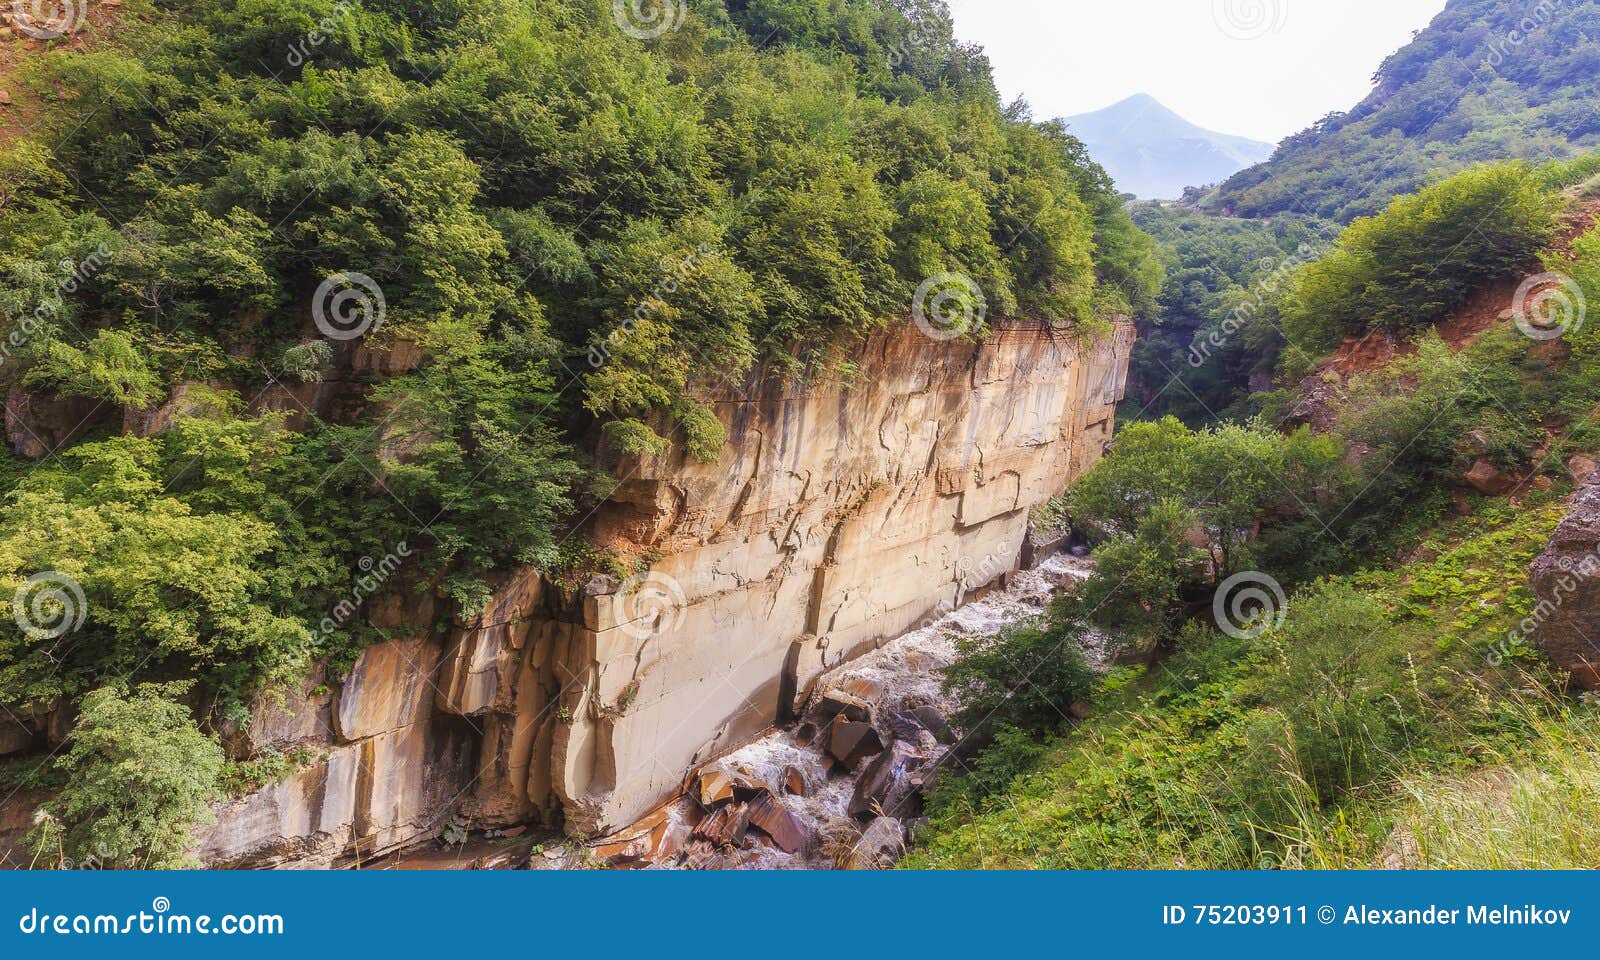 gudialchay river in a mountain canyon near the village of griz.guba.azerbaijan